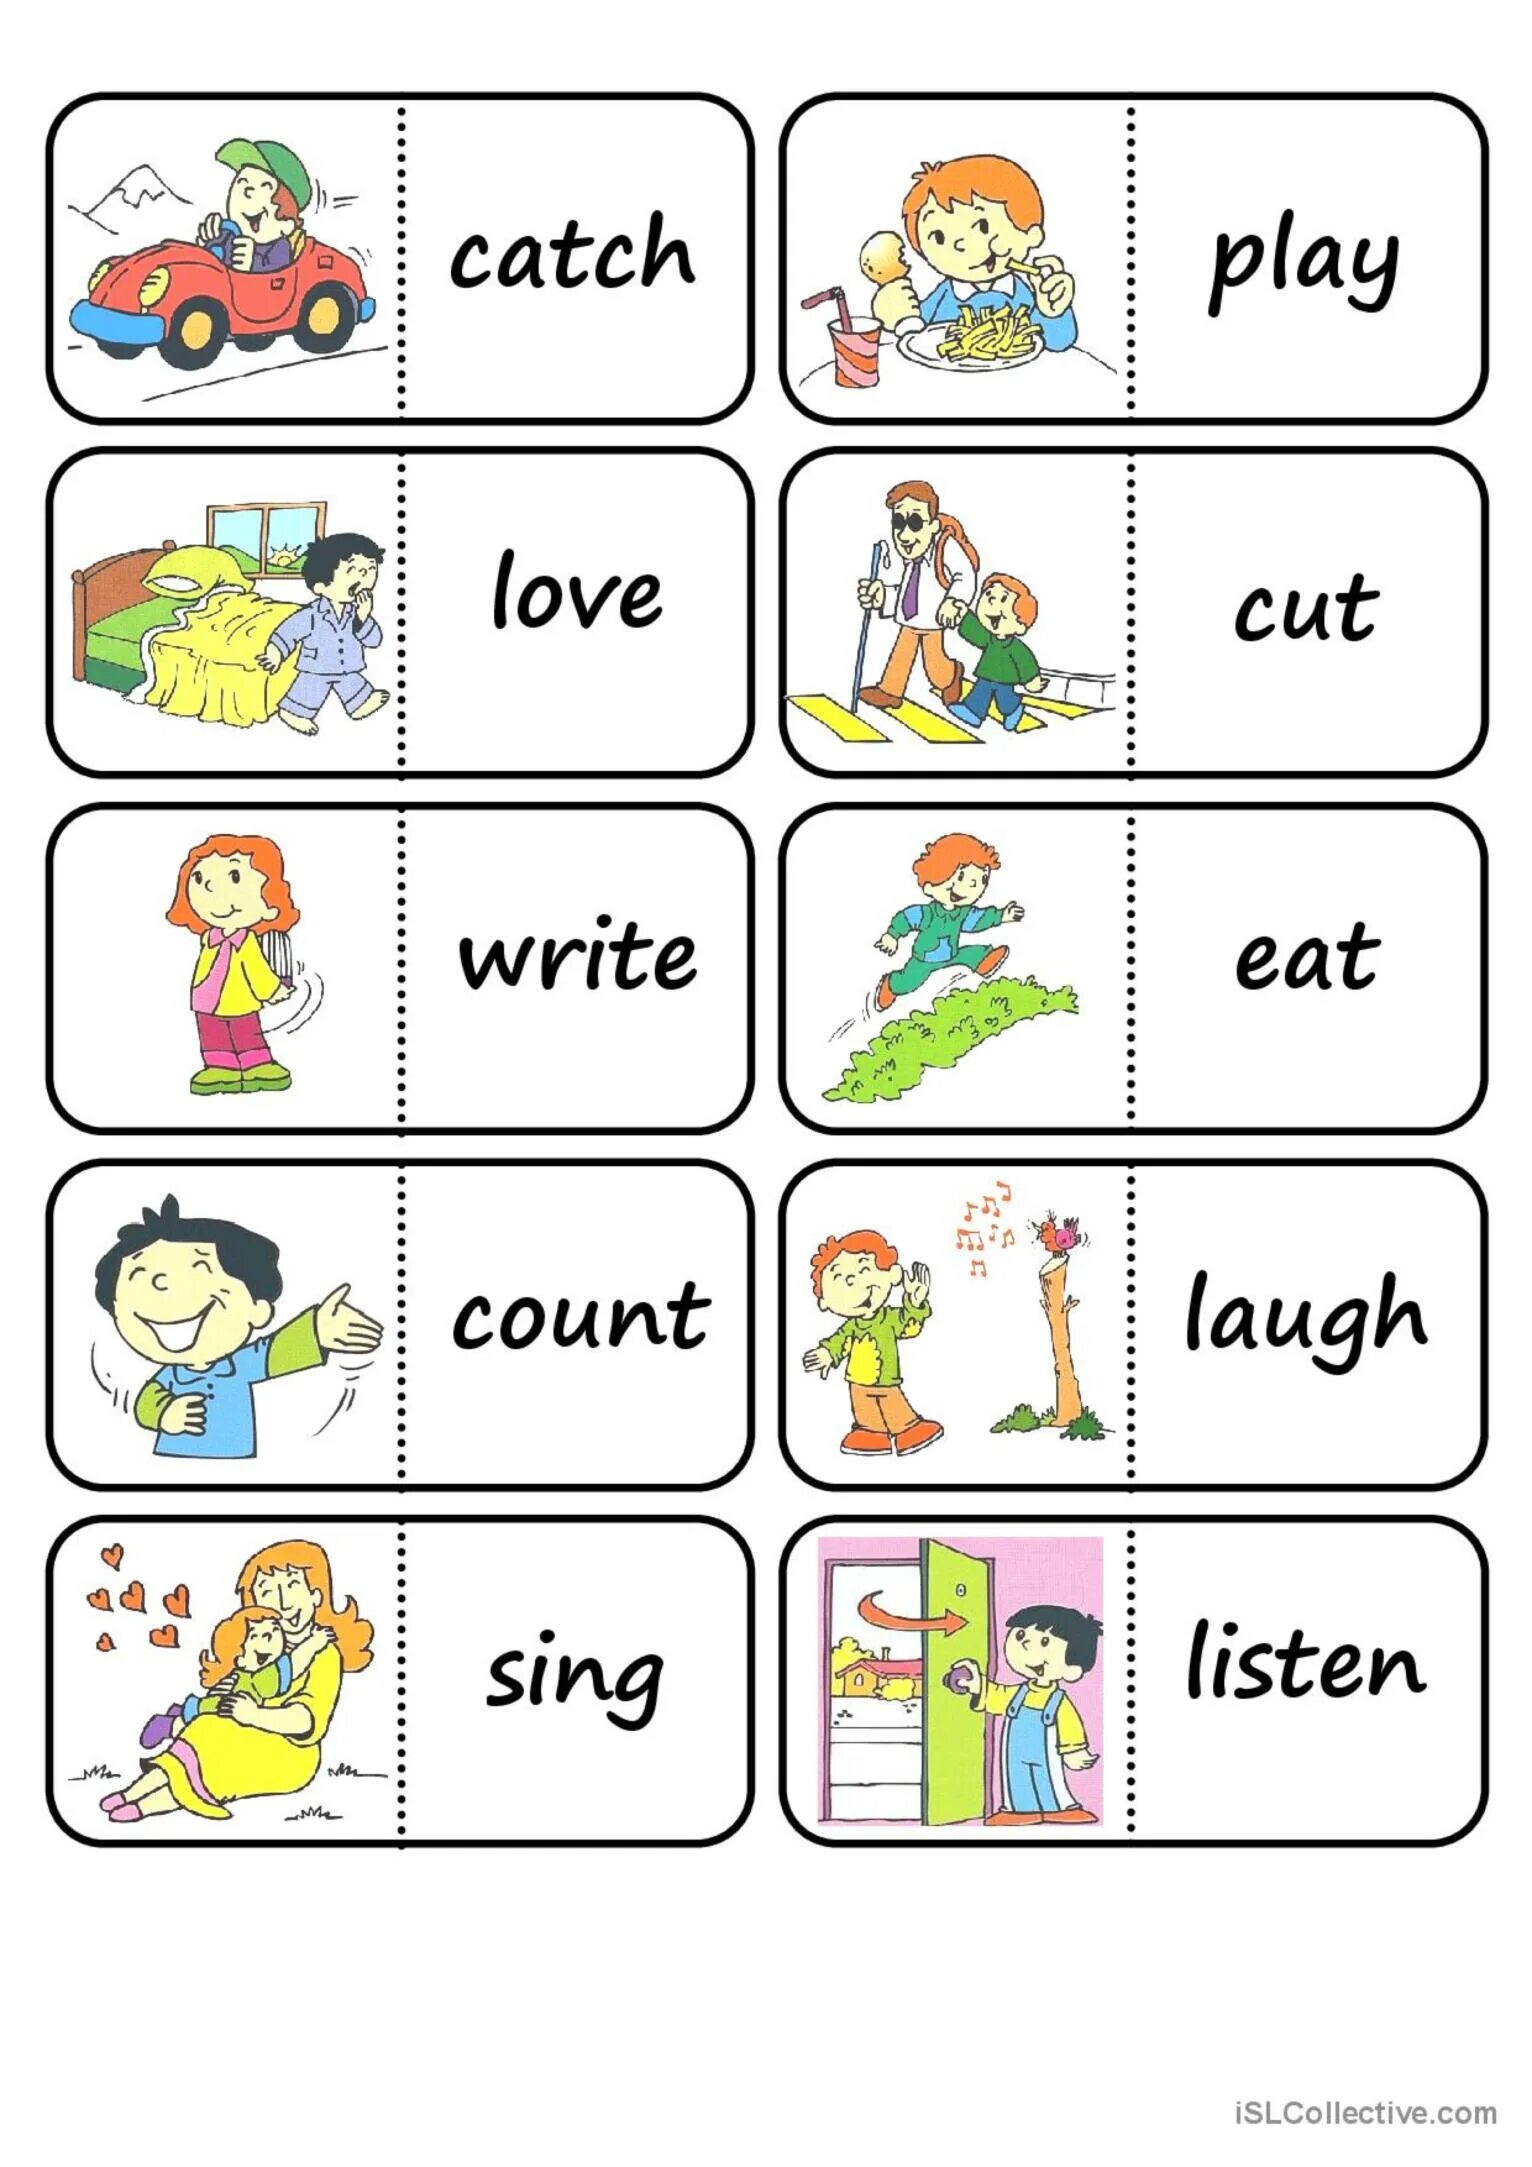 Actions rules. Английский для детей карточки с глаголами. Глаголы в английском языке для детей. Карточки Actions для детей. Глаголы на английском для детей.